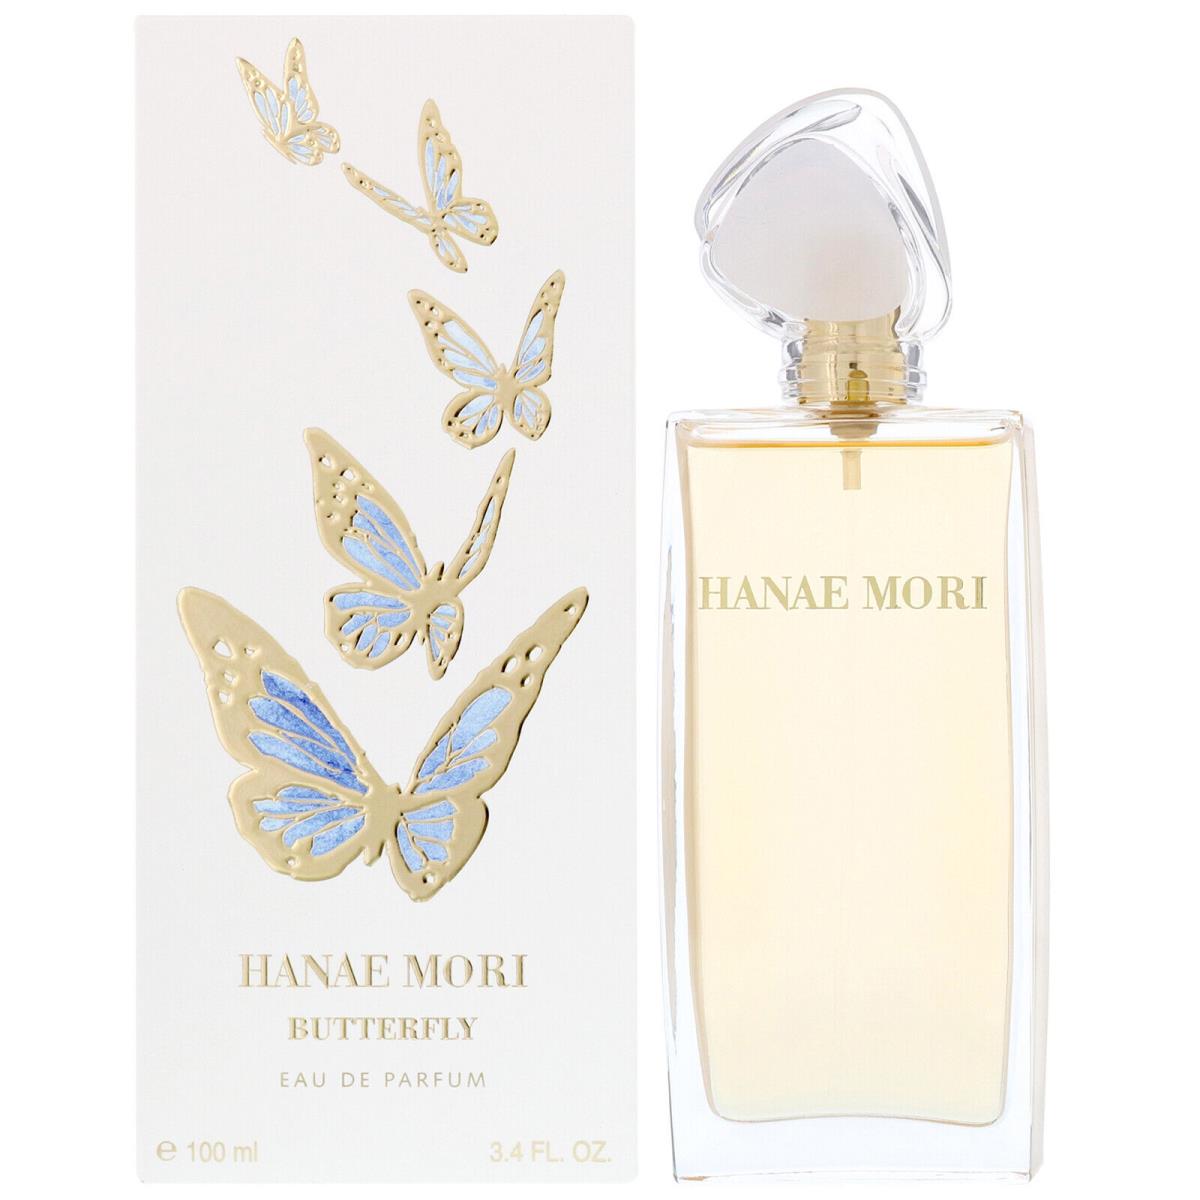 Hanae Mori by Hanae Mori 3.4 Fl oz Eau de Parfum Spray For Women